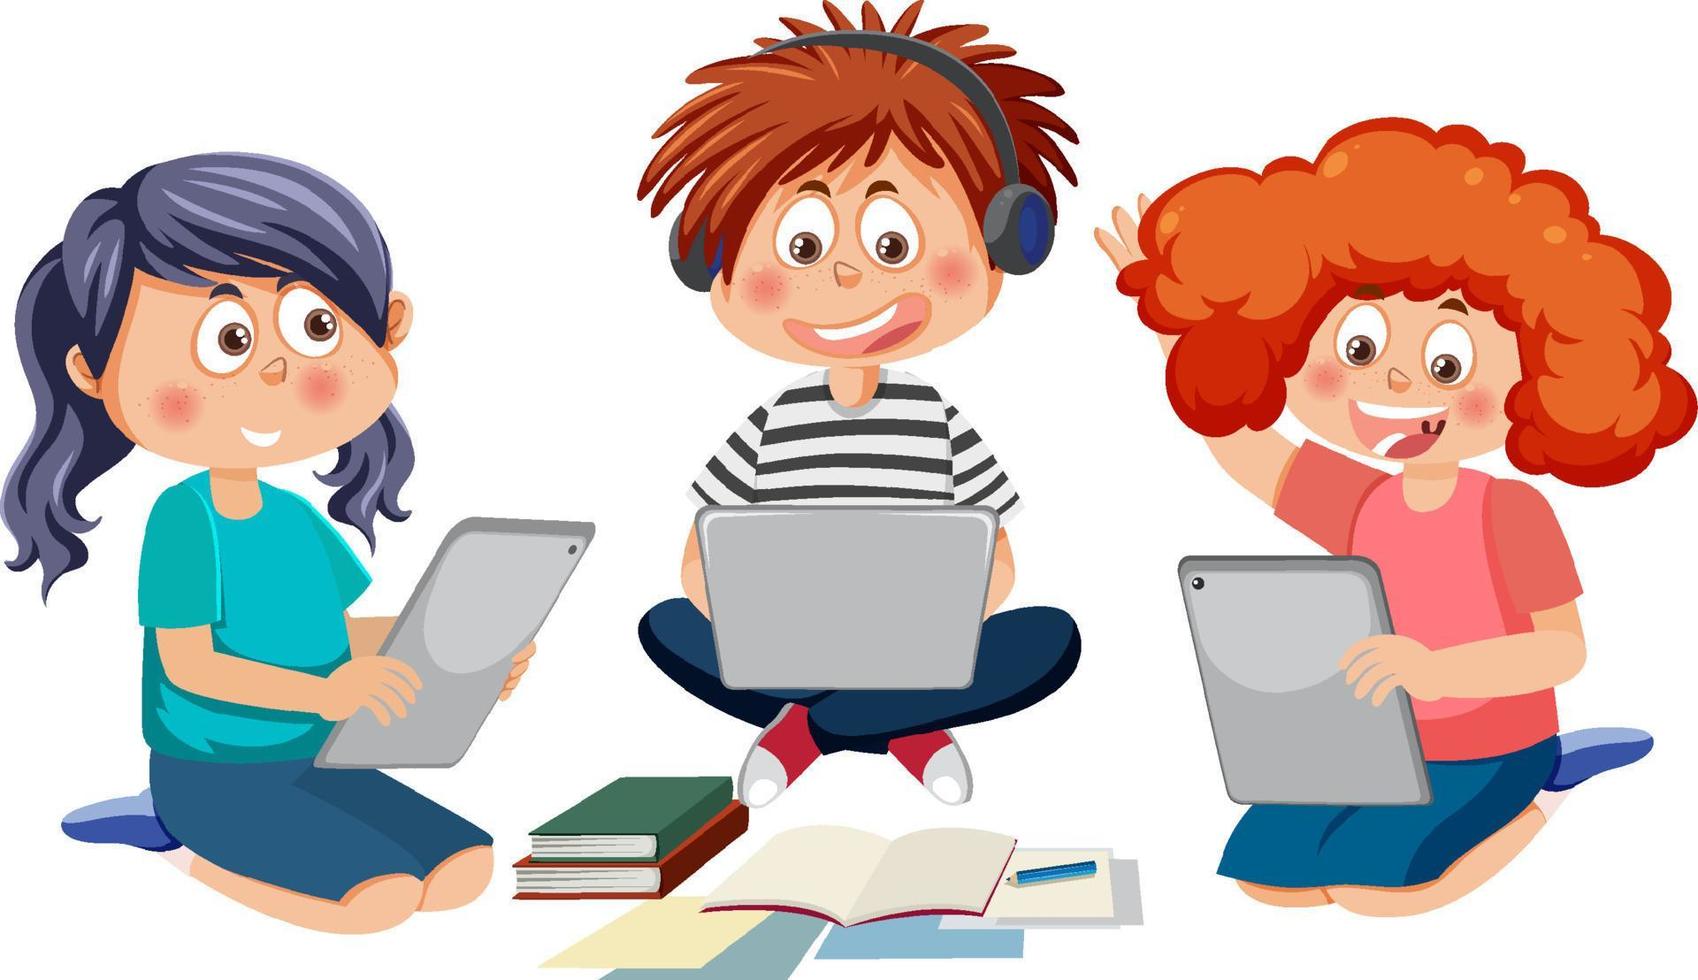 Children using laptop cartoon character vector